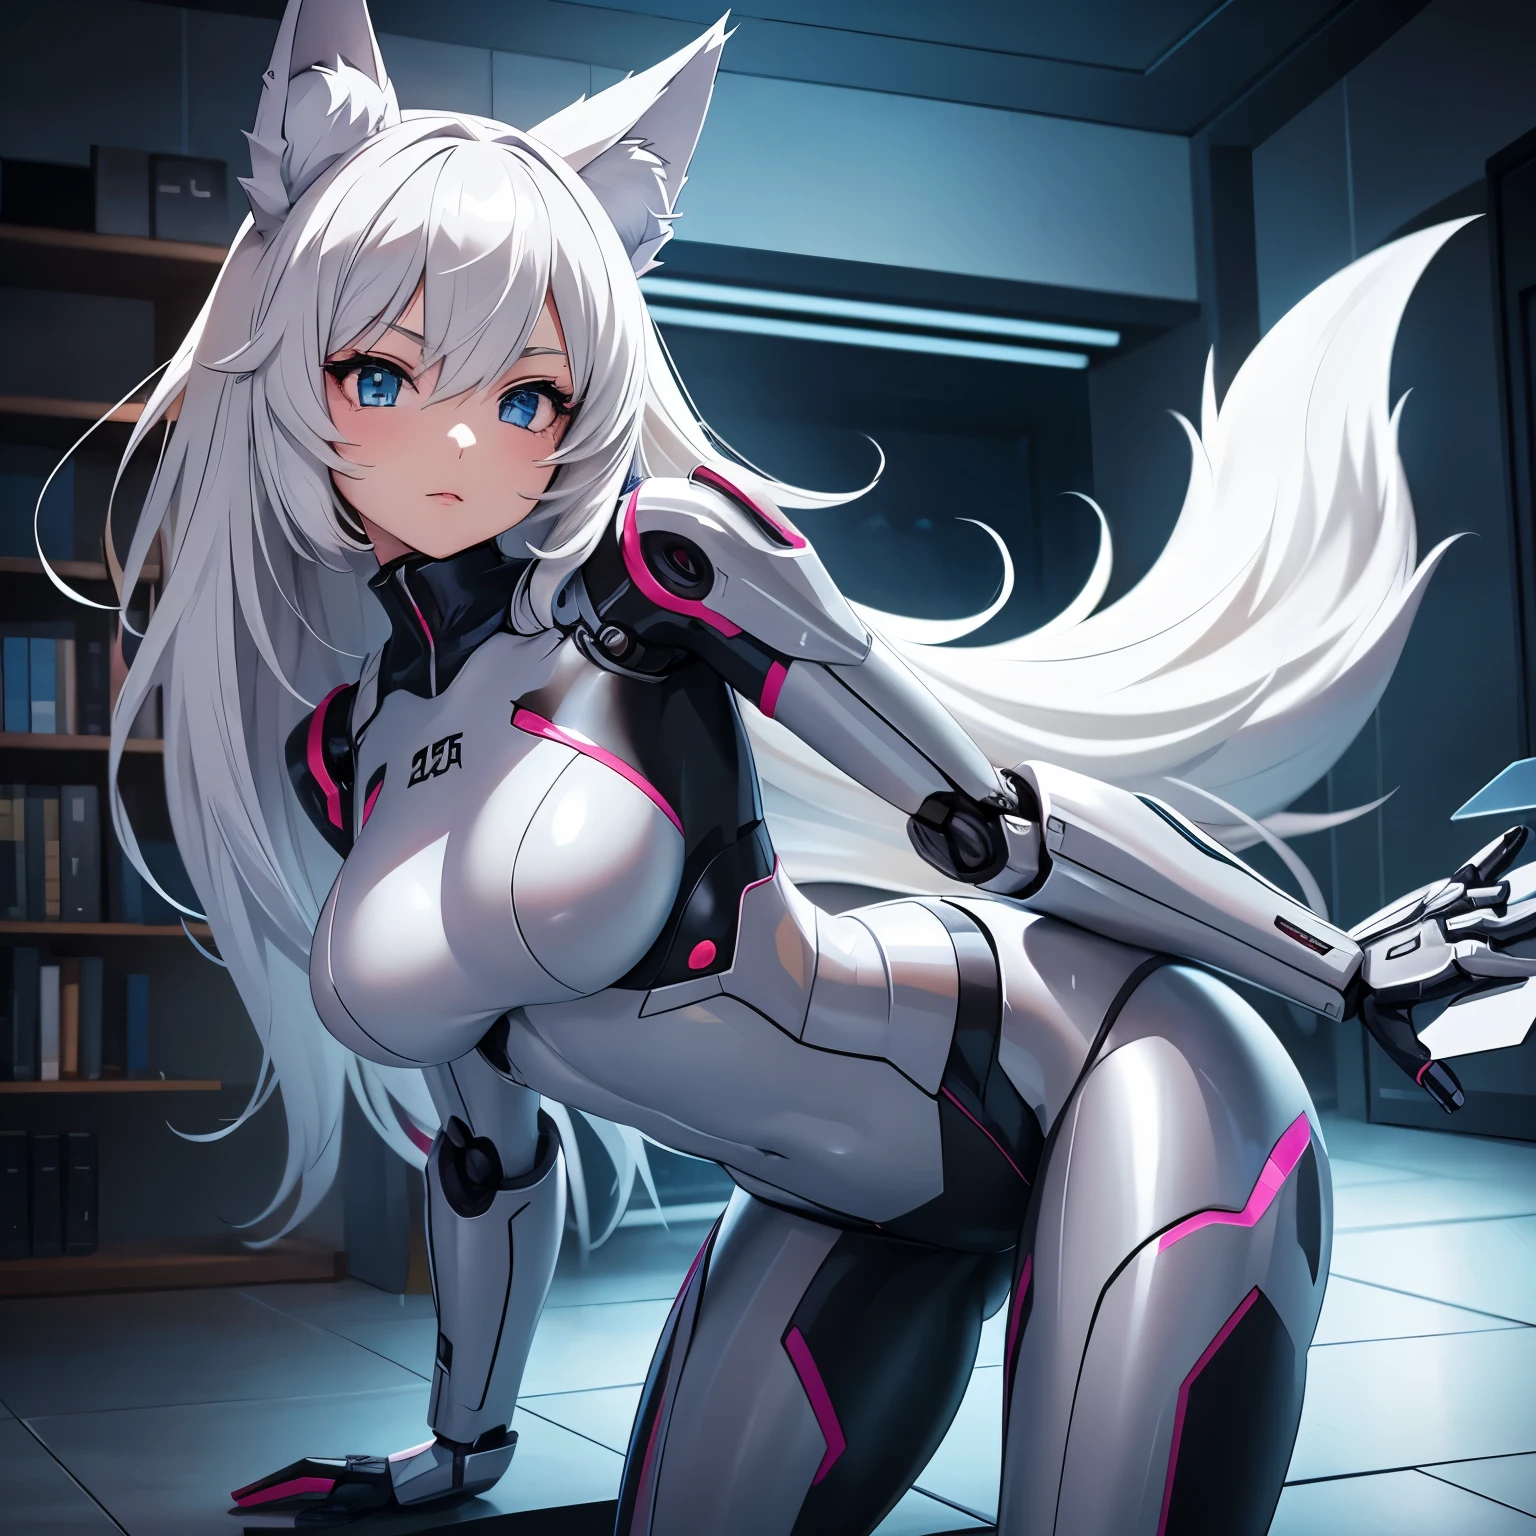 صورة أنمي لفتاة روبوتية لديها جسم آلي, يرتدي ملابس داخلية وله أذنان ذئب وذيل وهو موجود في الغرفة 